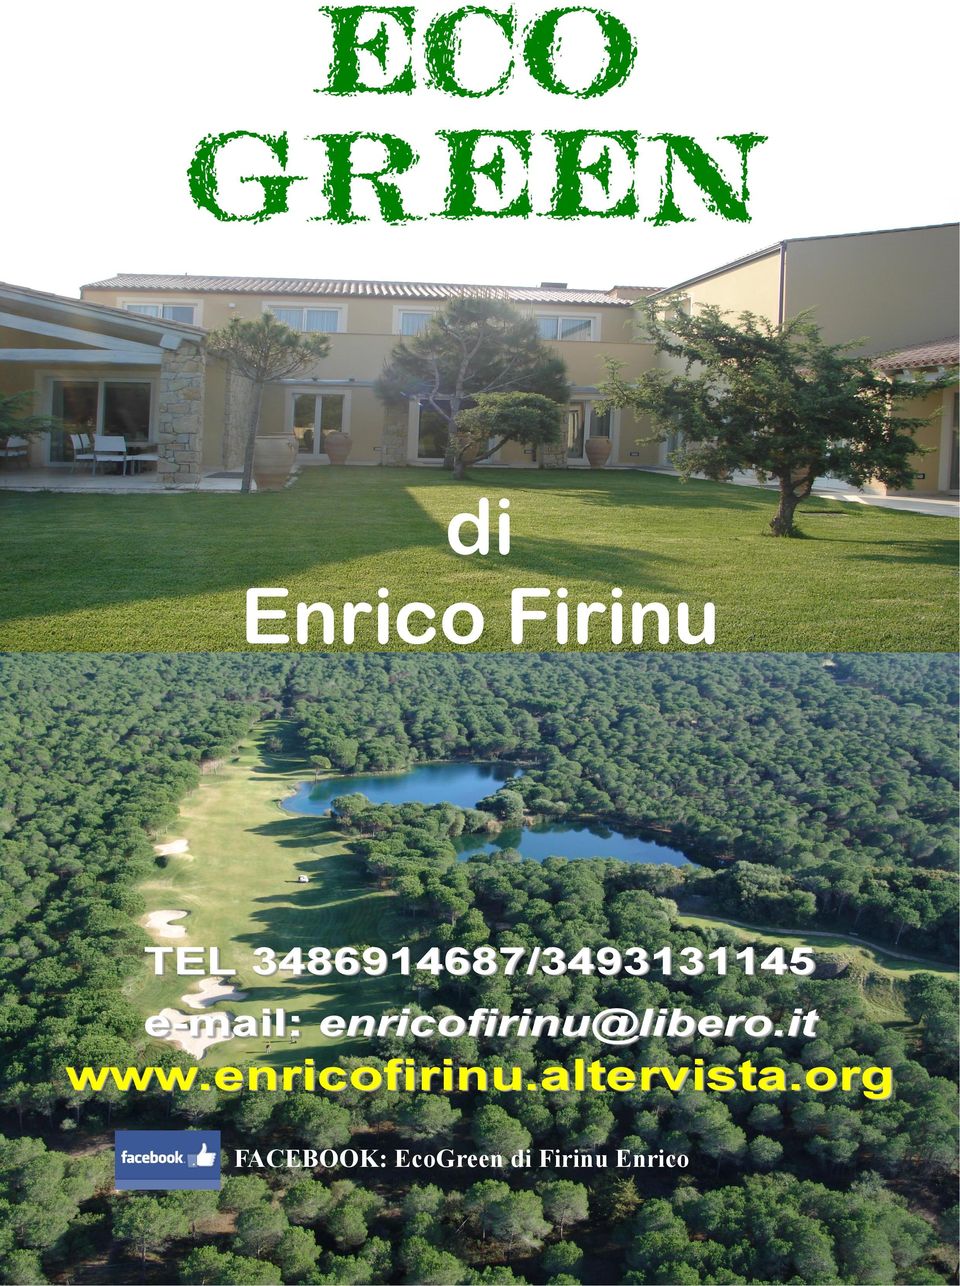 e-mail: enricofirinu@libero.it www.